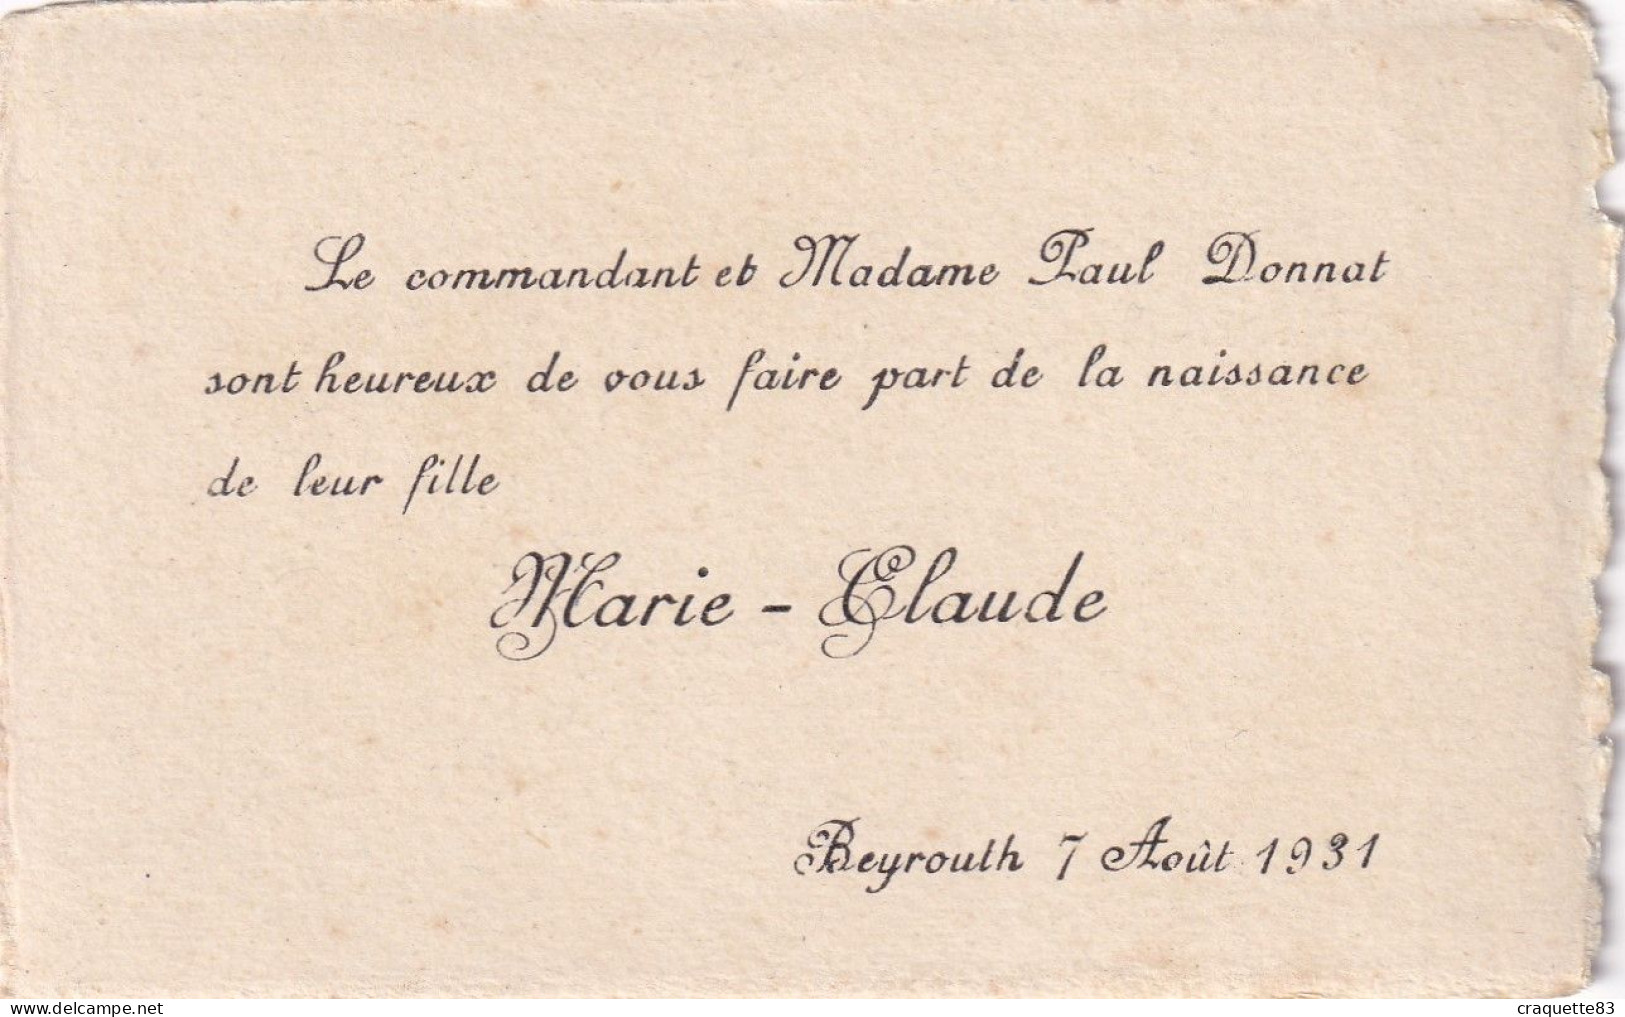 COMMANDANT PAUL DONNAT SONT HEUREUX DE FAIRE PART NAISSANCE FILLE MARIE-CLAUDE  BEYROUTH 7 AOUT 1931 - Naissance & Baptême